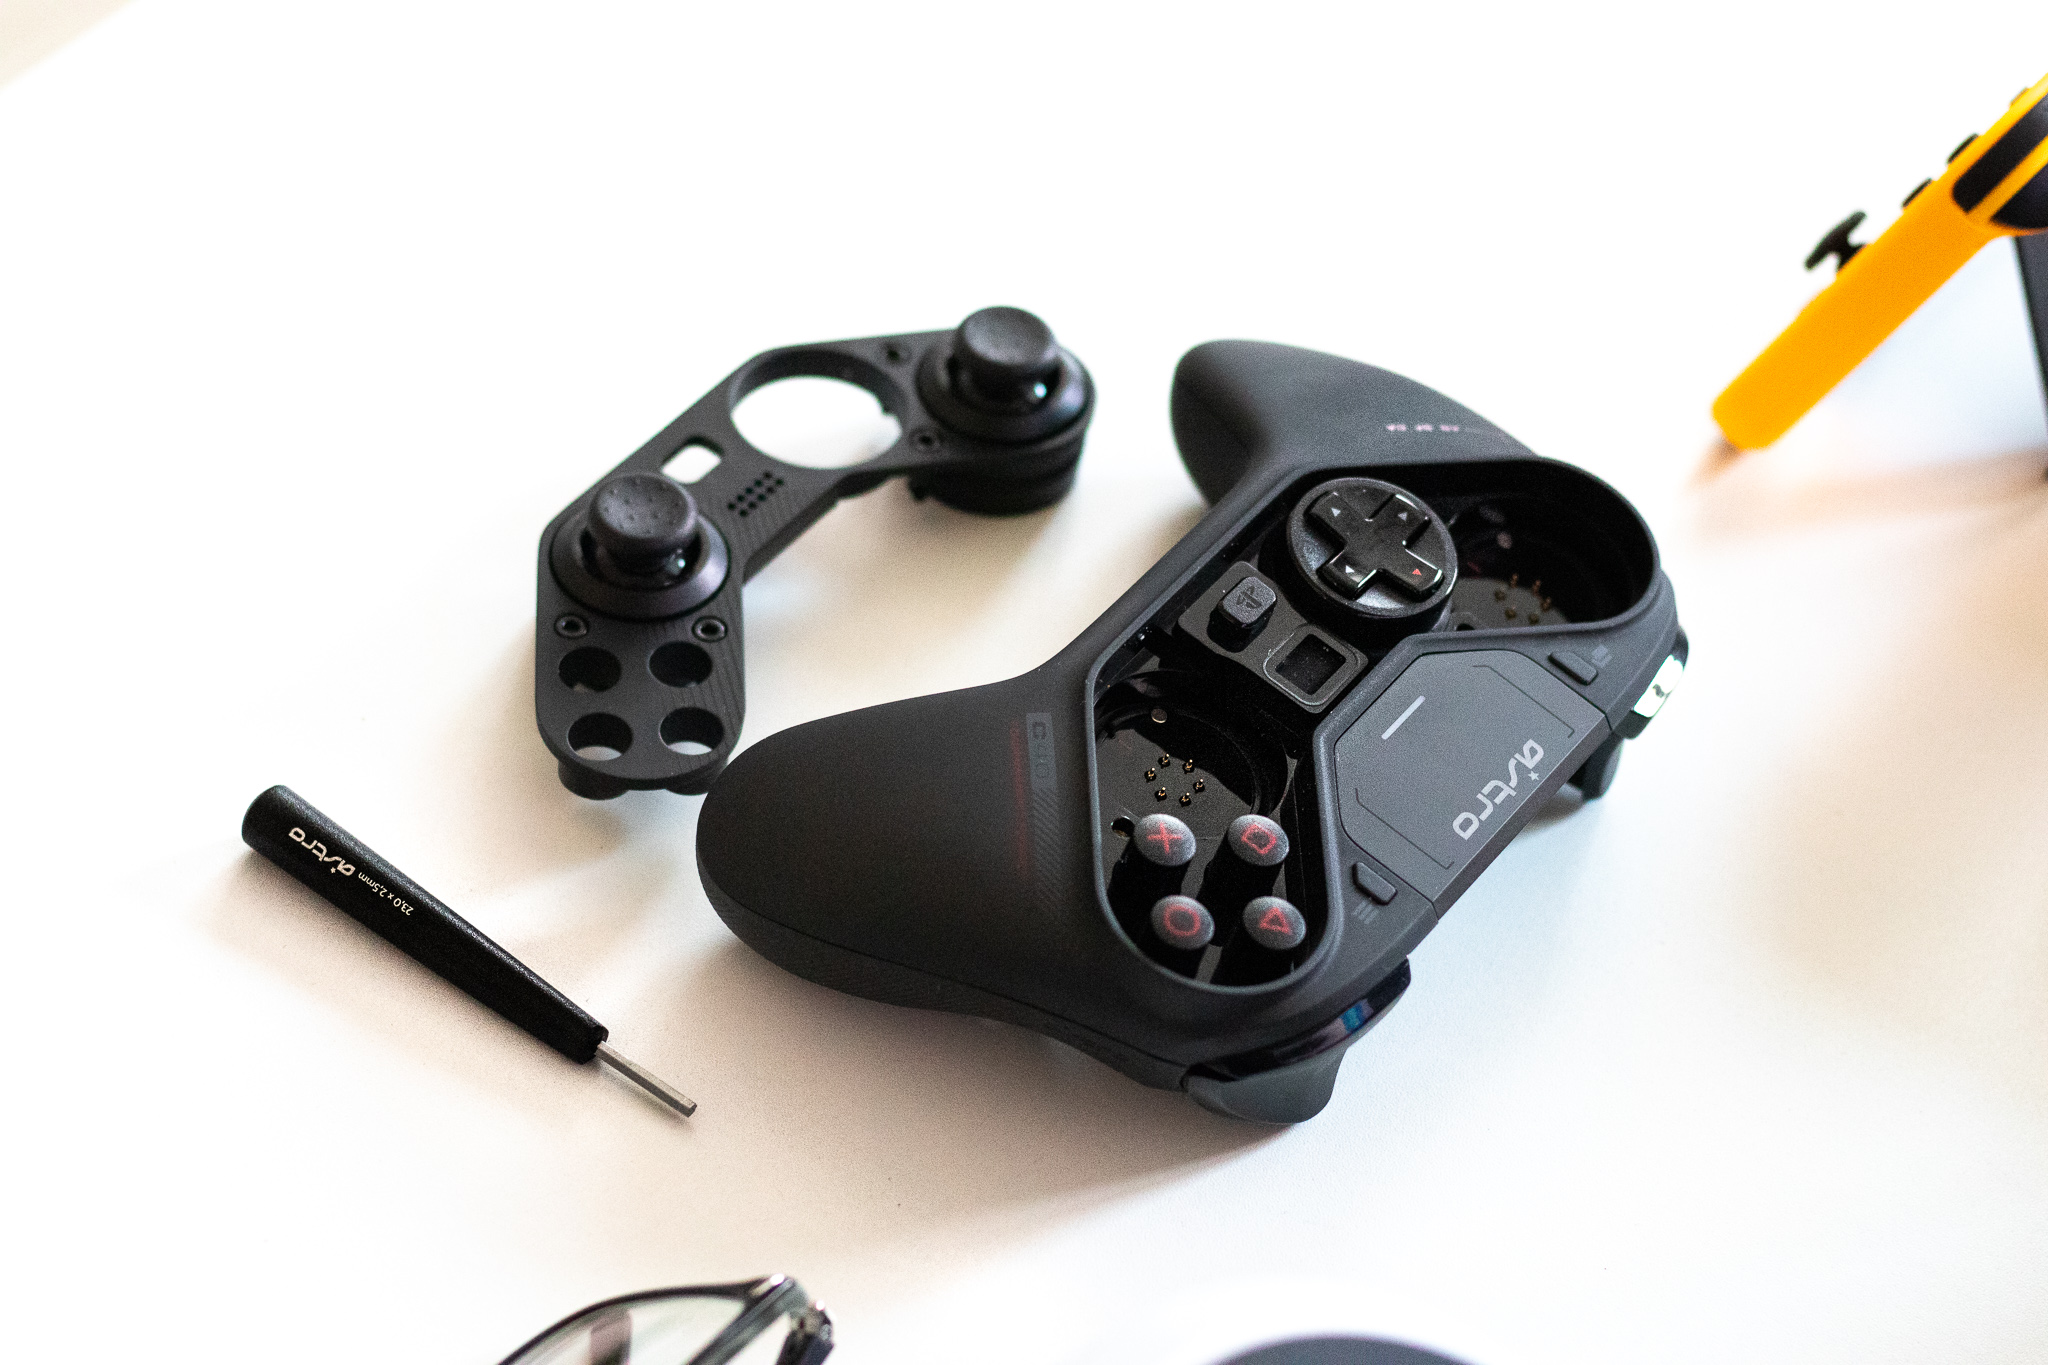 Pengaturan analog dari PlayStation atau Xbox? Kontroler Astro C40 TR menawarkan kedua pengaturan ini - tinjauan 12